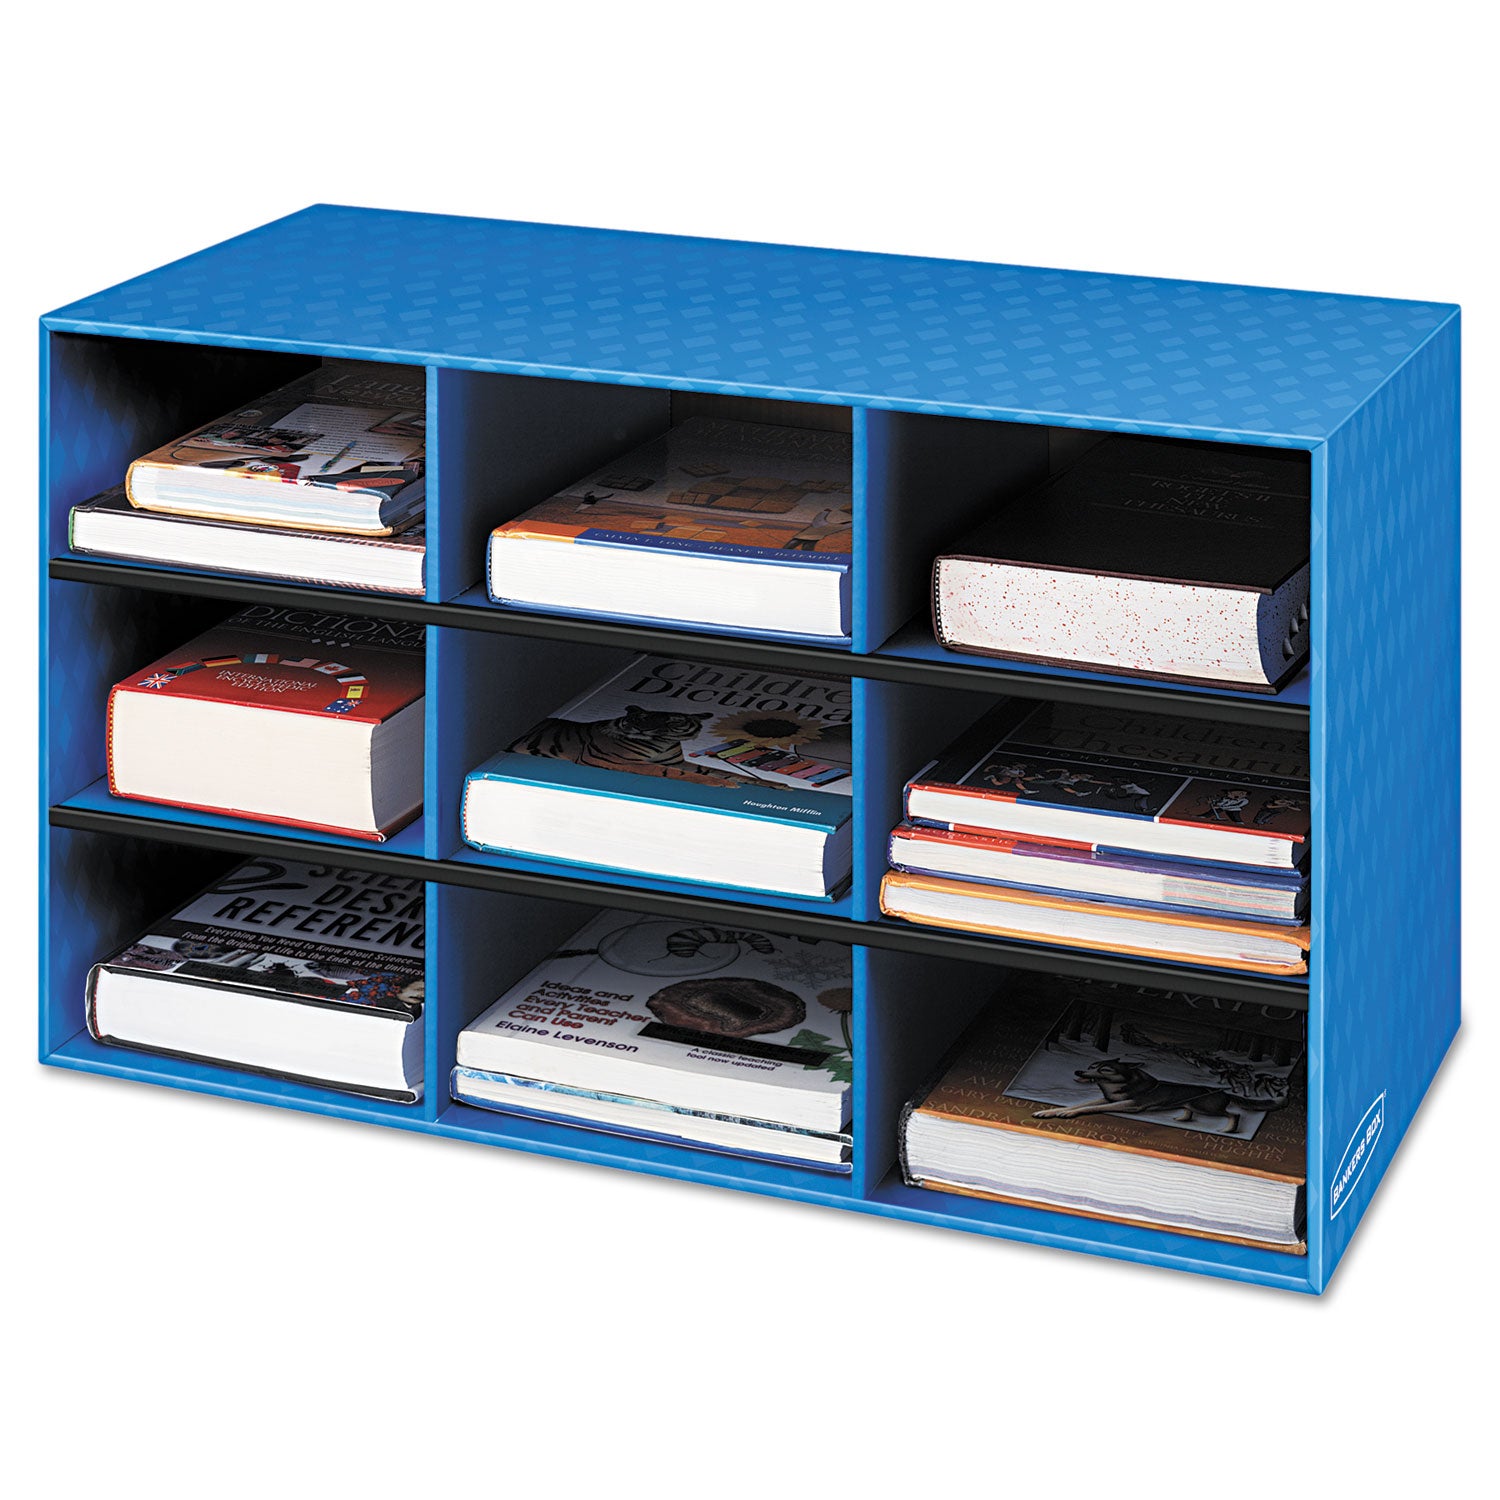 Classroom Literature Sorter, 9 Compartments, 28.25 x 13 x 16, Blue - 